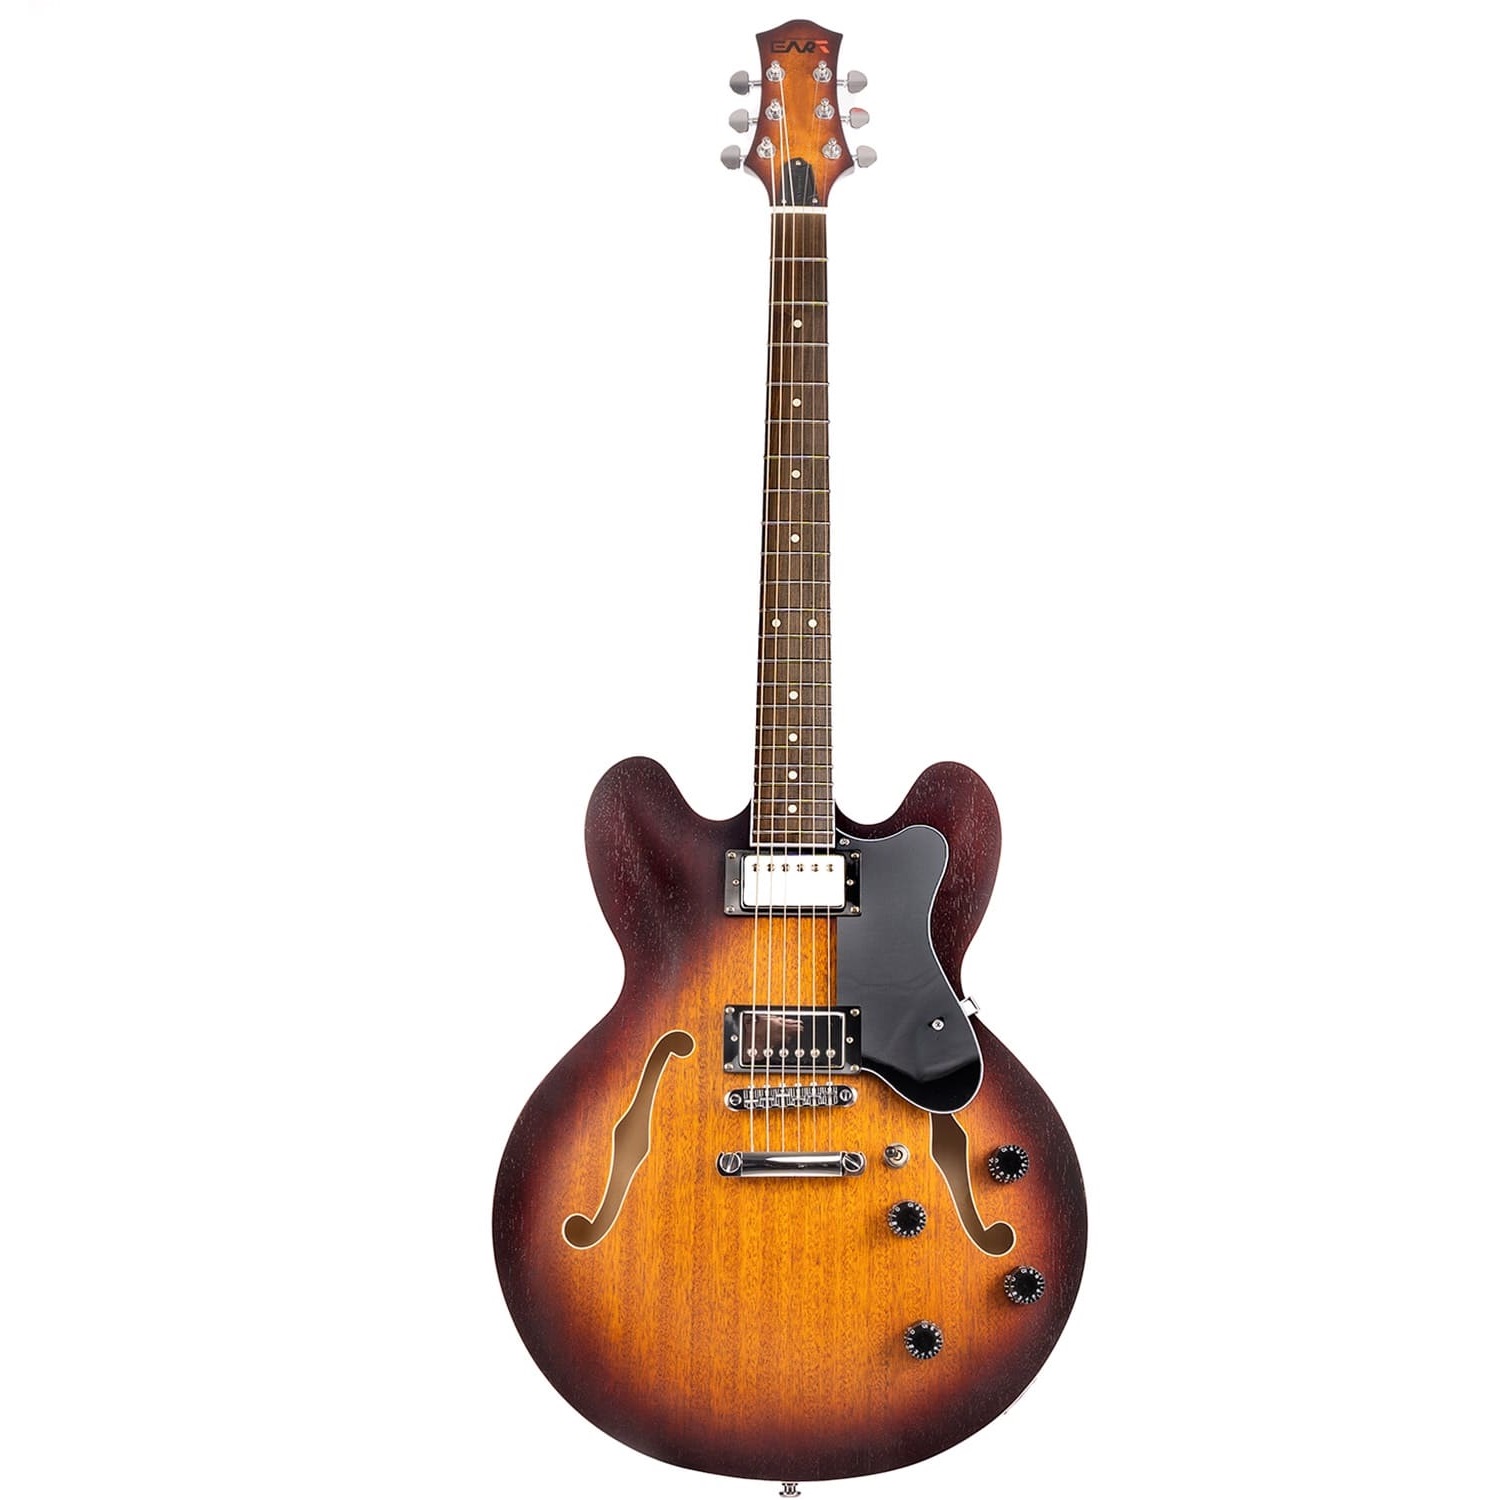 Полуакустические гитары Eart E-335 Brown Sunburst электроакустические гитары kepma d1ce sunburst matt кабель в комплекте